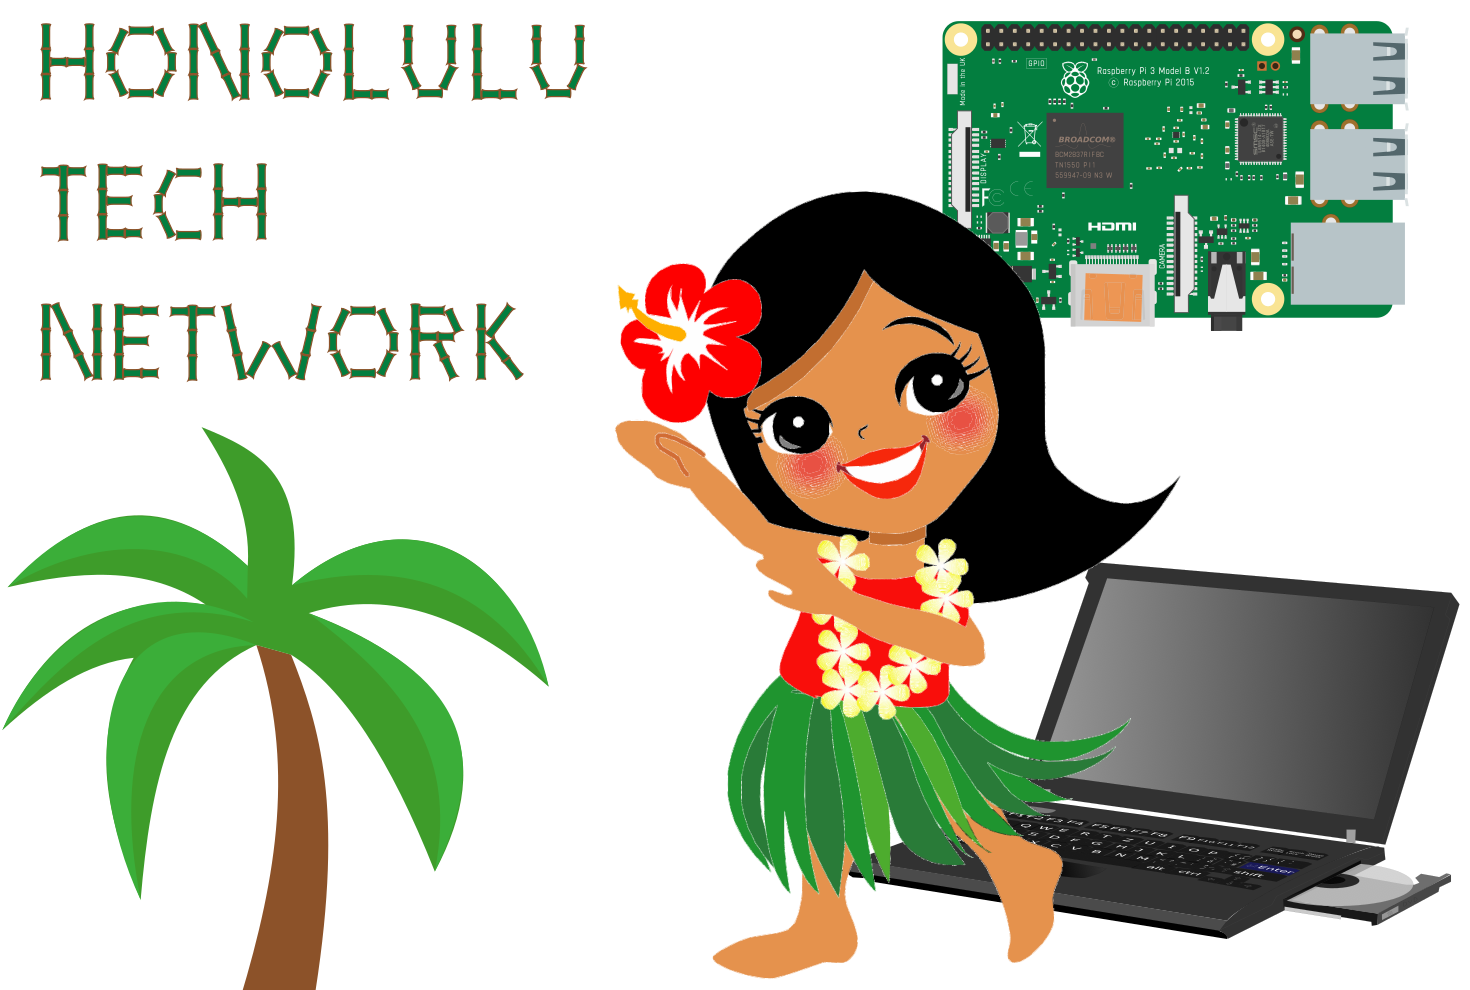 Honolulu Tech Network